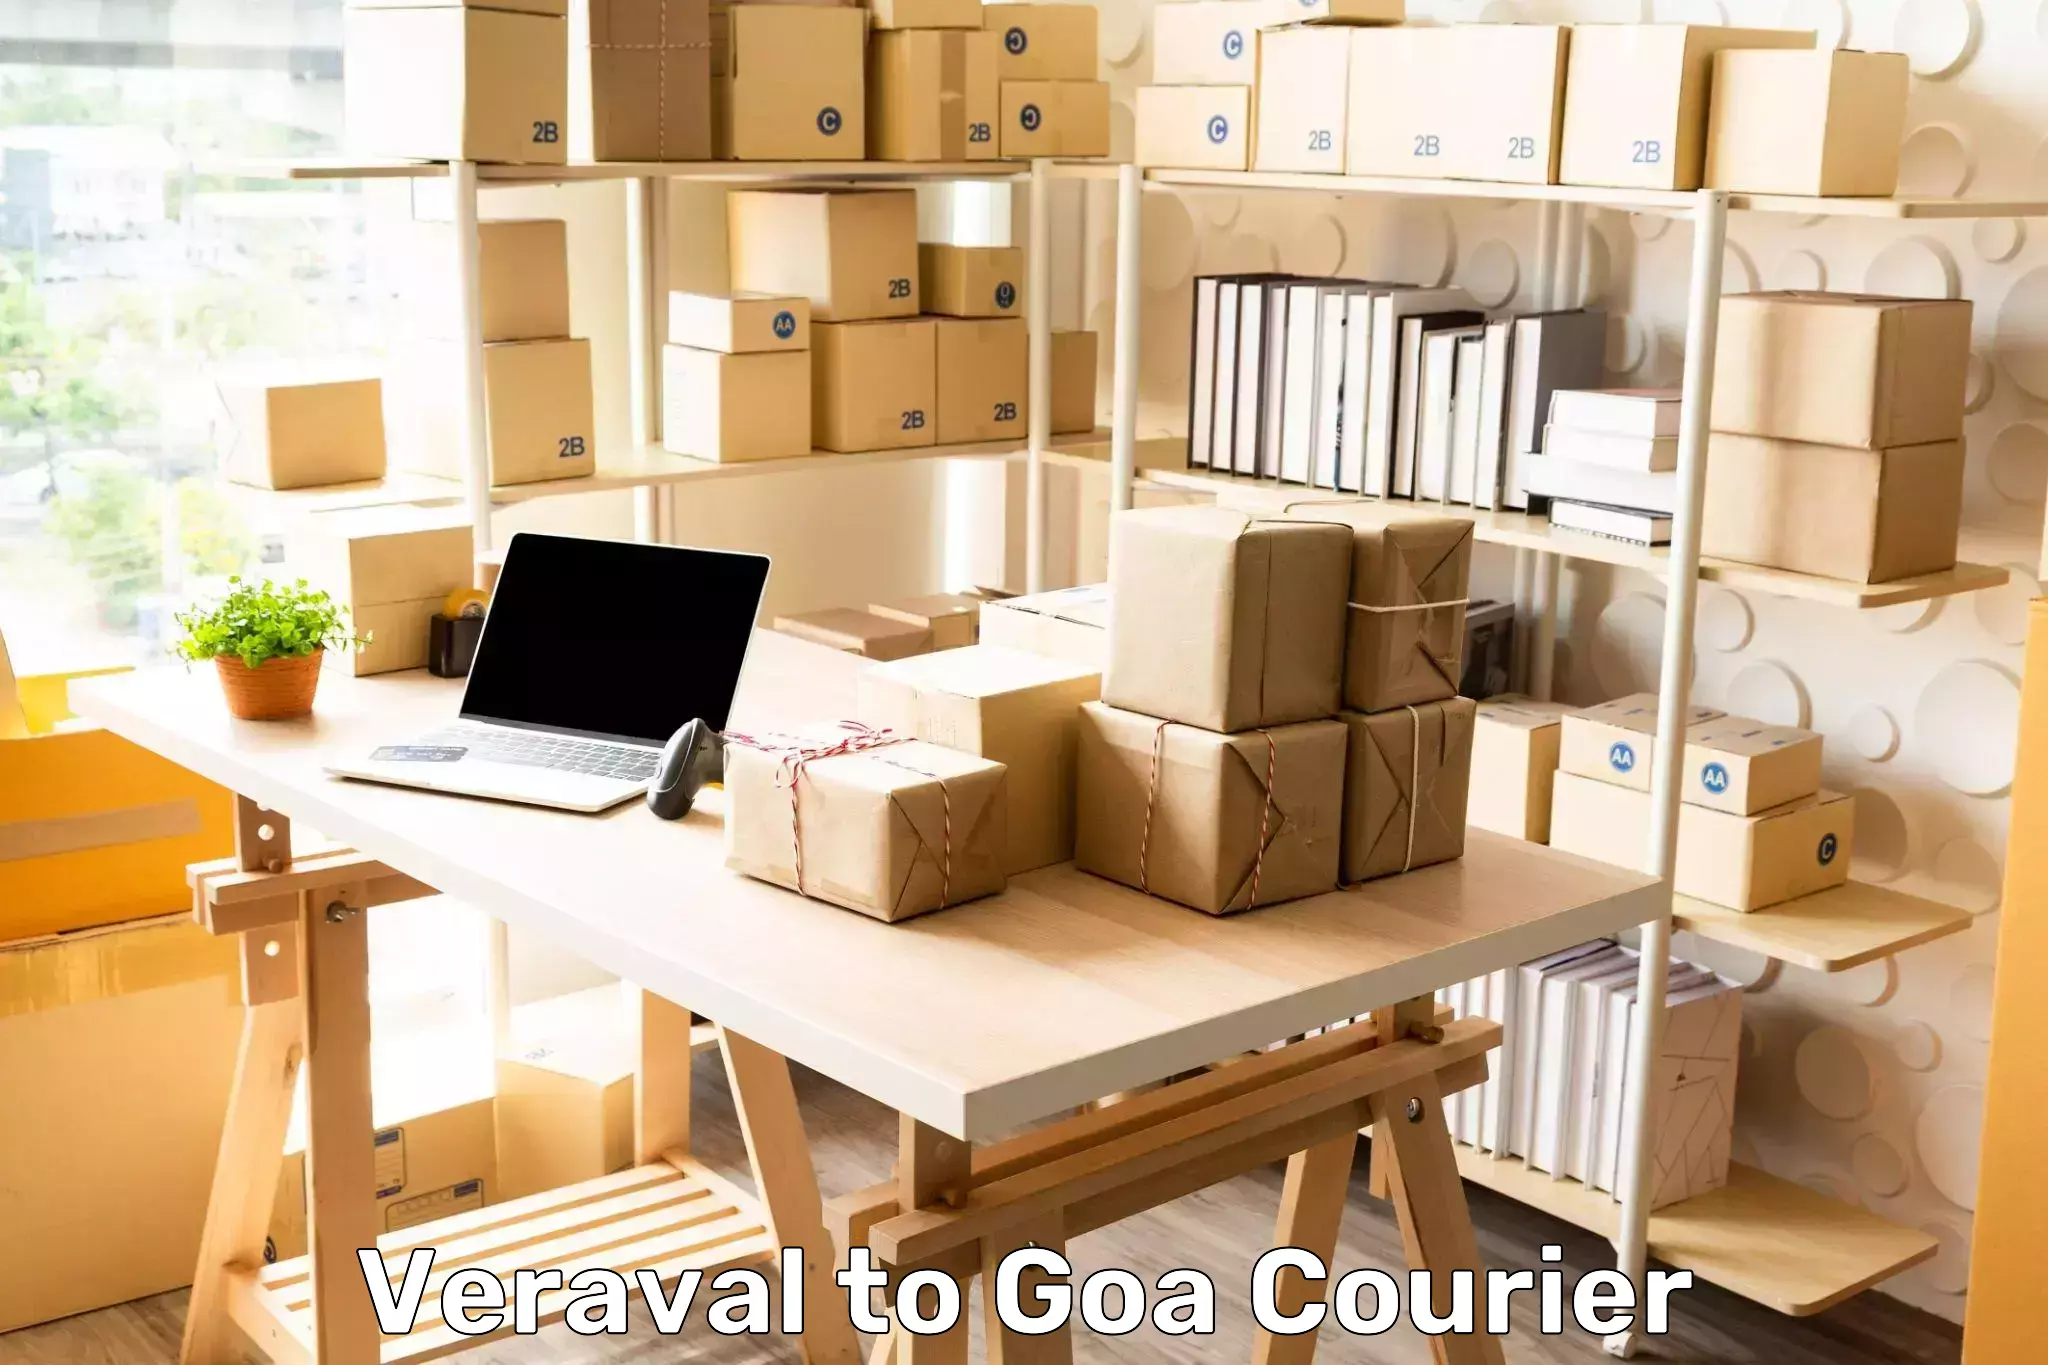 Custom courier packaging Veraval to Vasco da Gama